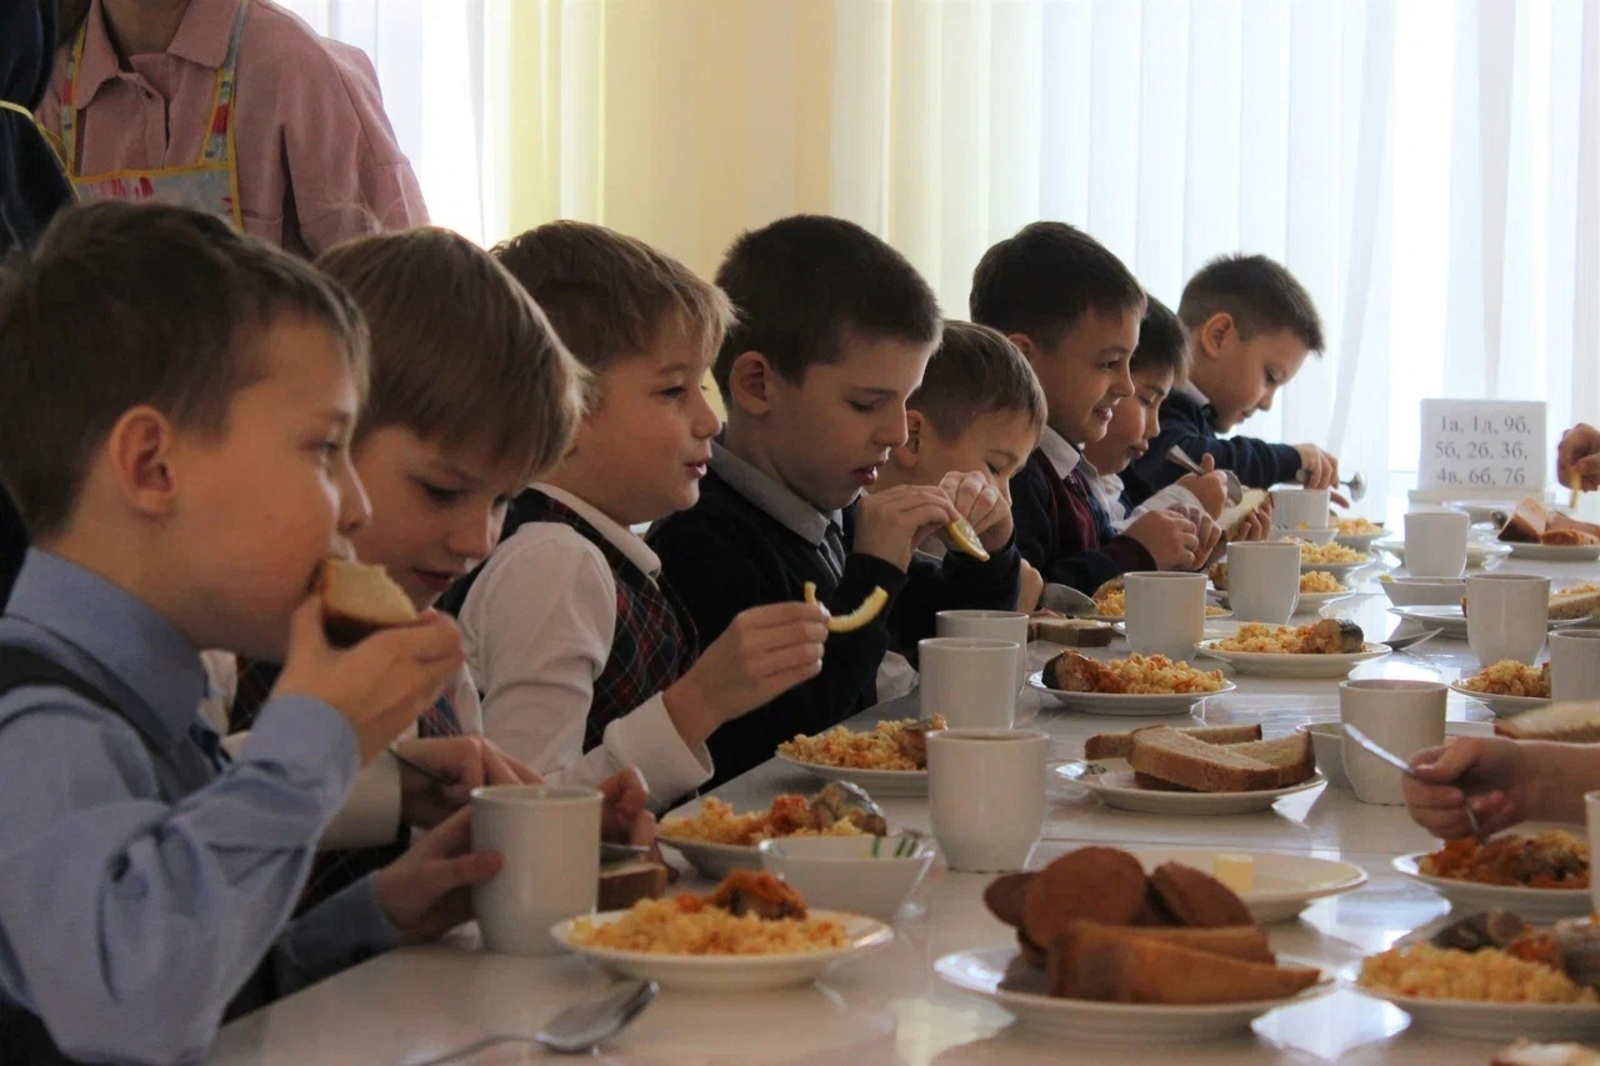 Глава Башкирии Радий Хабиров заявил о намерении "жестко наказывать" за ненадлежащее питание в школах